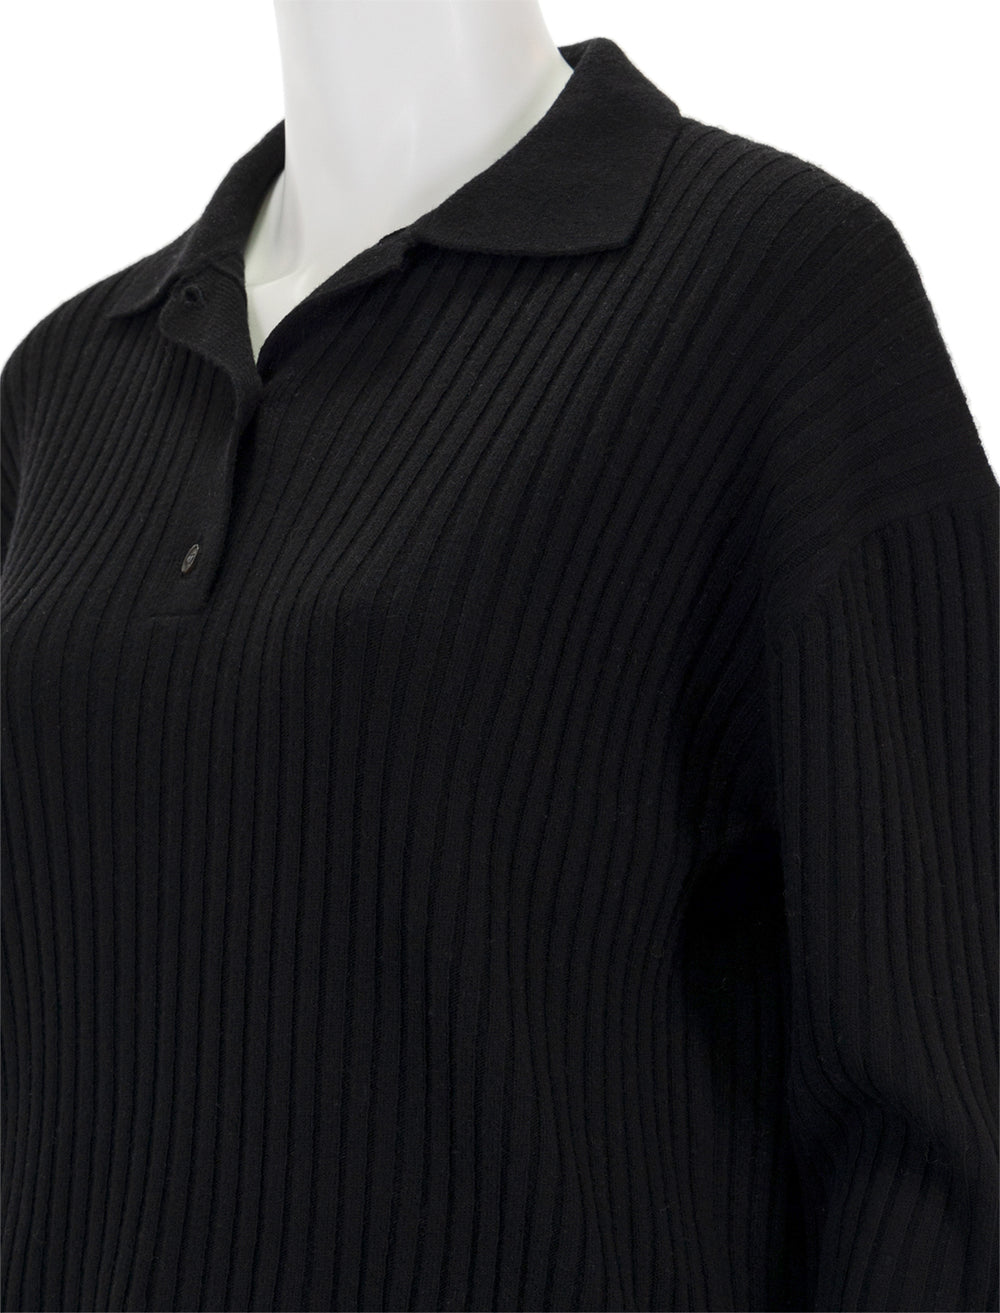 Close-up view of Nili Lotan's ramona polo sweater in black.